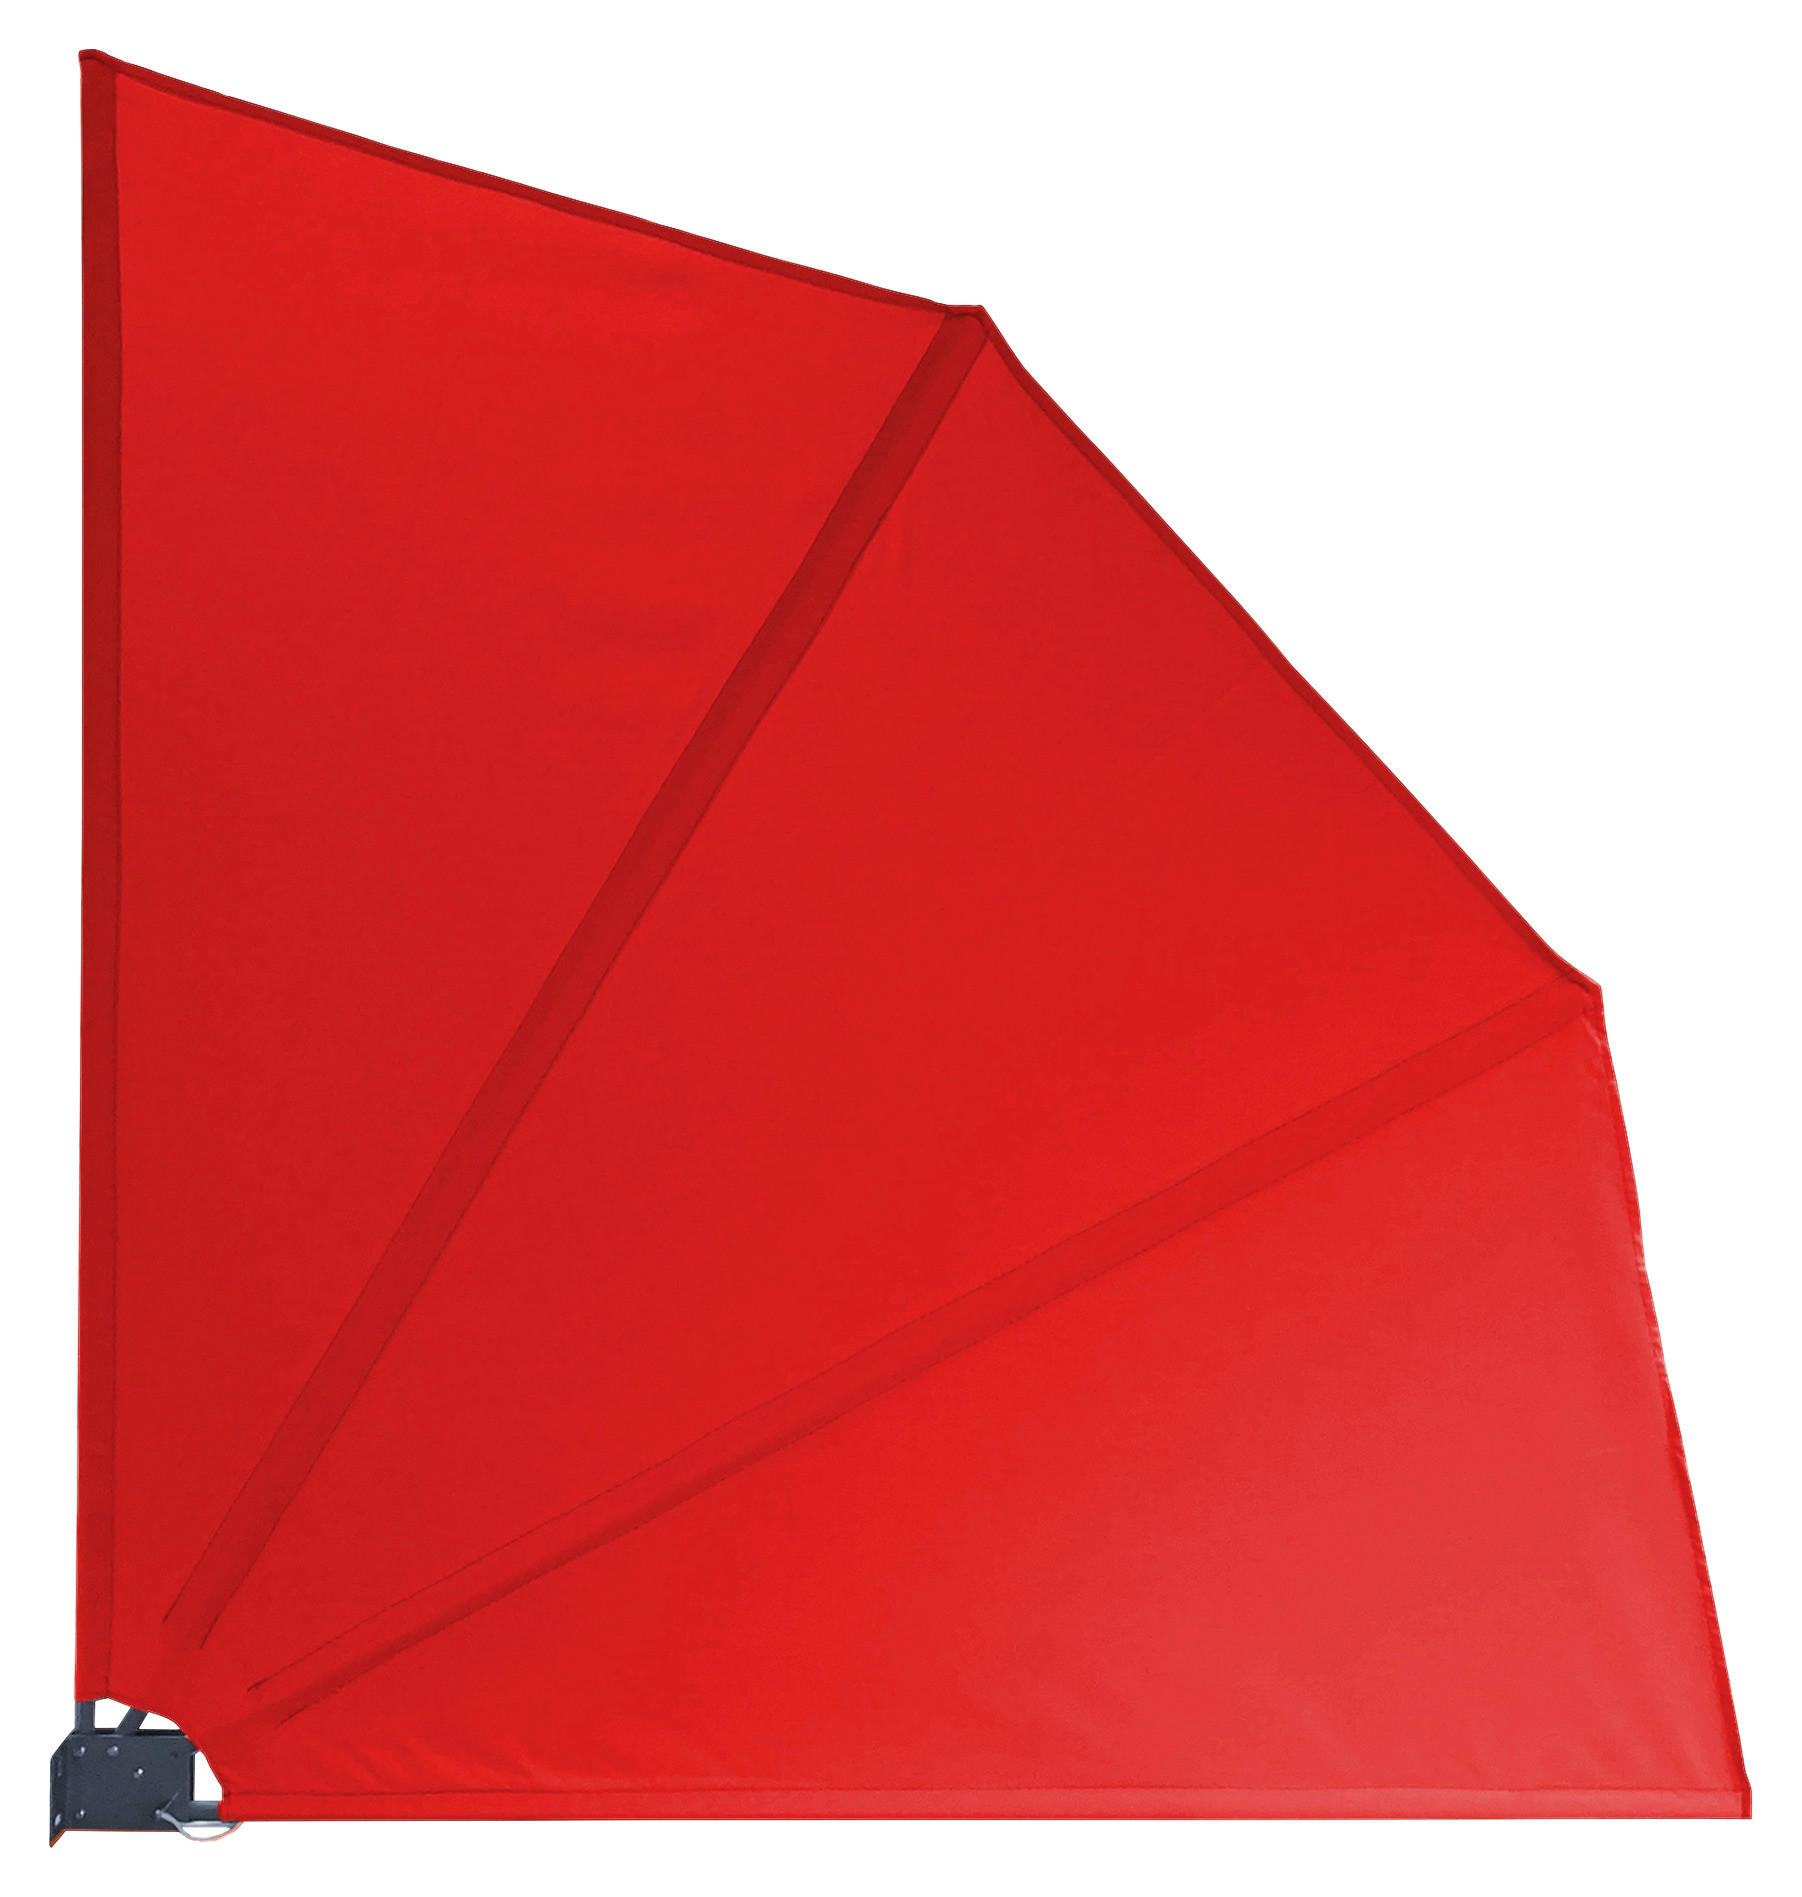 Grasekamp Balkonfächer rot Polyester-Mischgewebe B/L: ca. 120x120 cm Balkonfächer_120x120cm - rot (120,00/120,00cm)